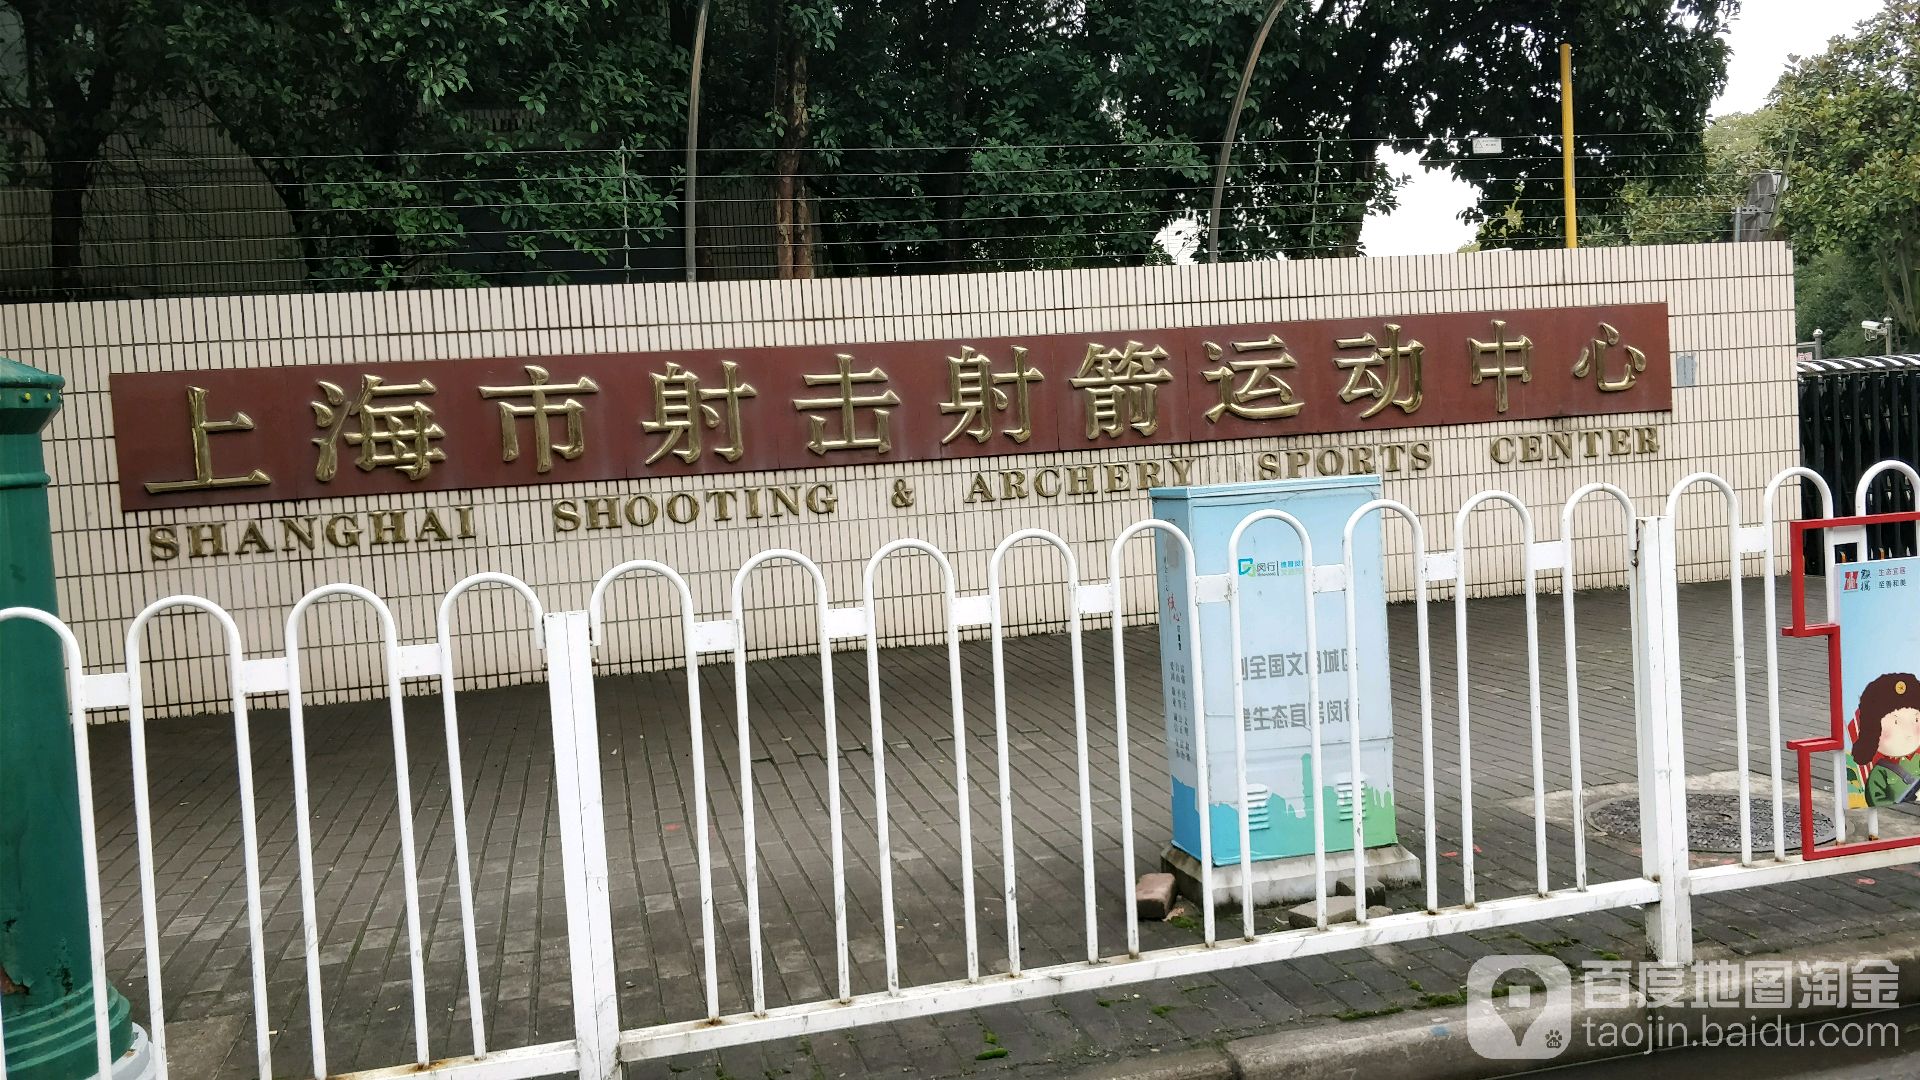 上海市射击射箭活动中心